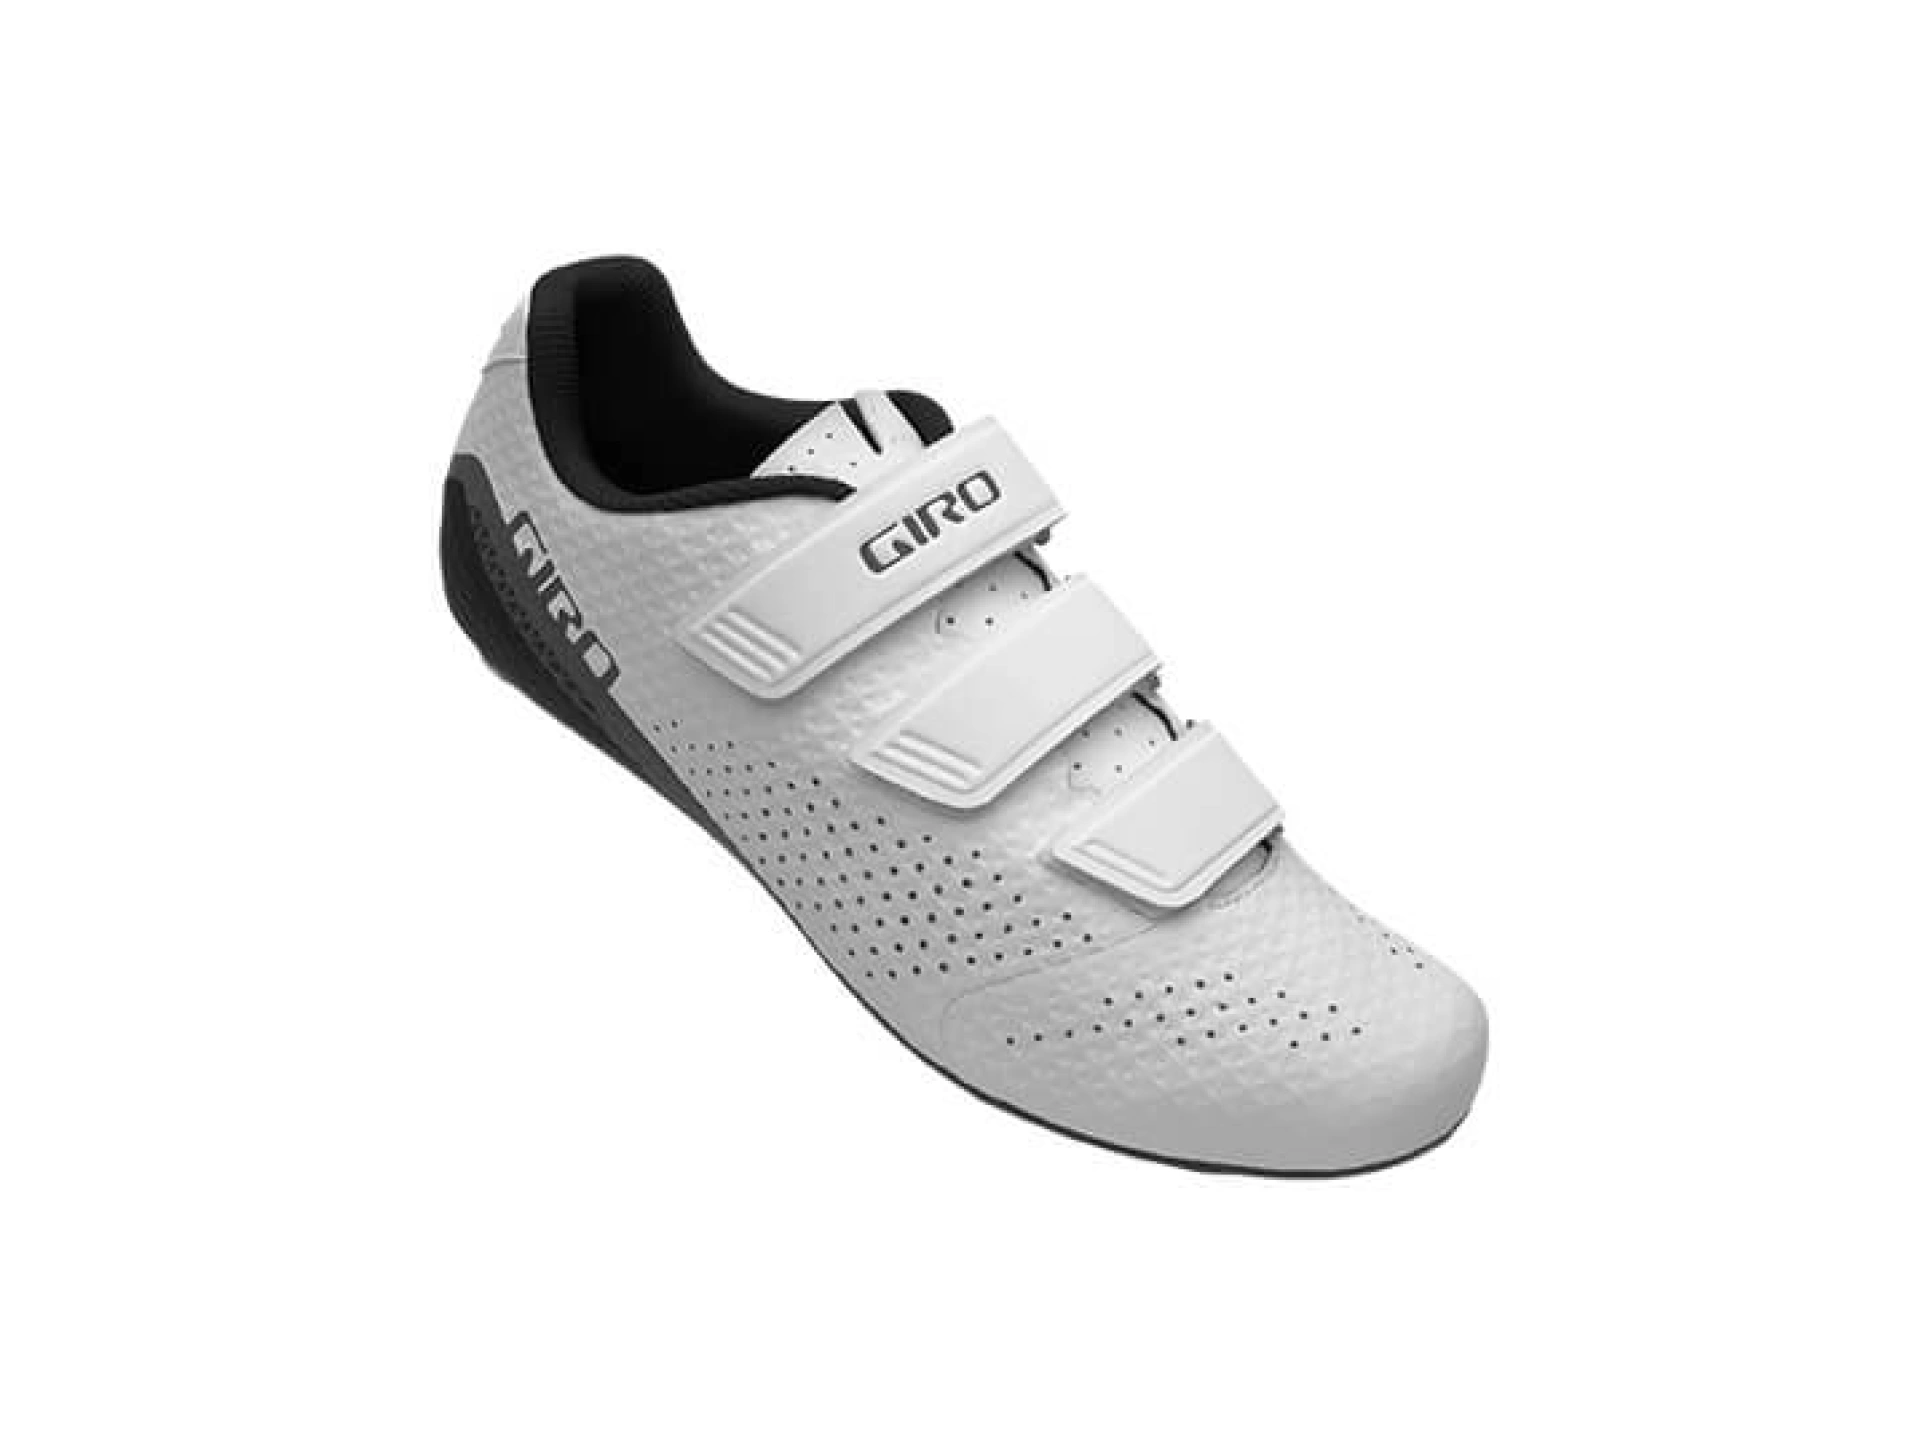 Giro Gf Stylus Spd Ayakkabı Beyaz 42 Numara